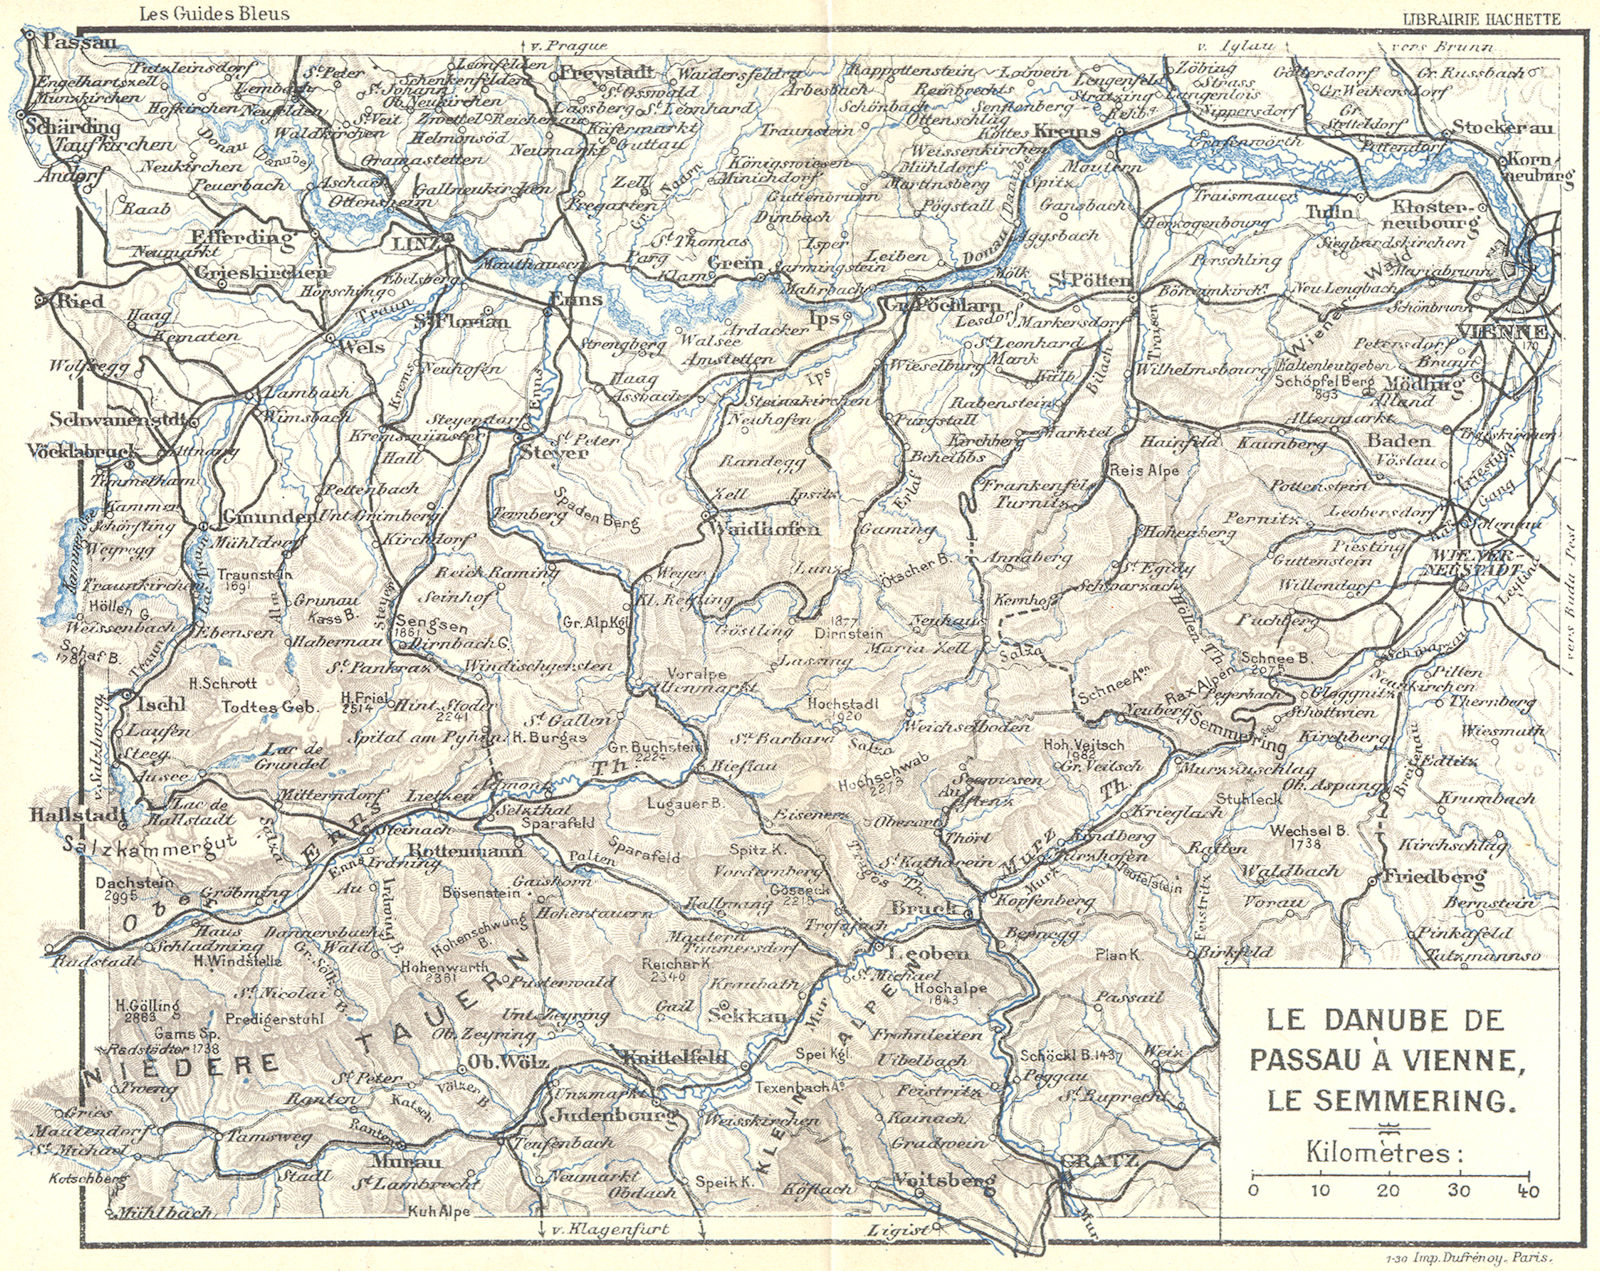 AUSTRIA. Danube de Passa a Vienne, Semmering 1914 old antique map plan chart